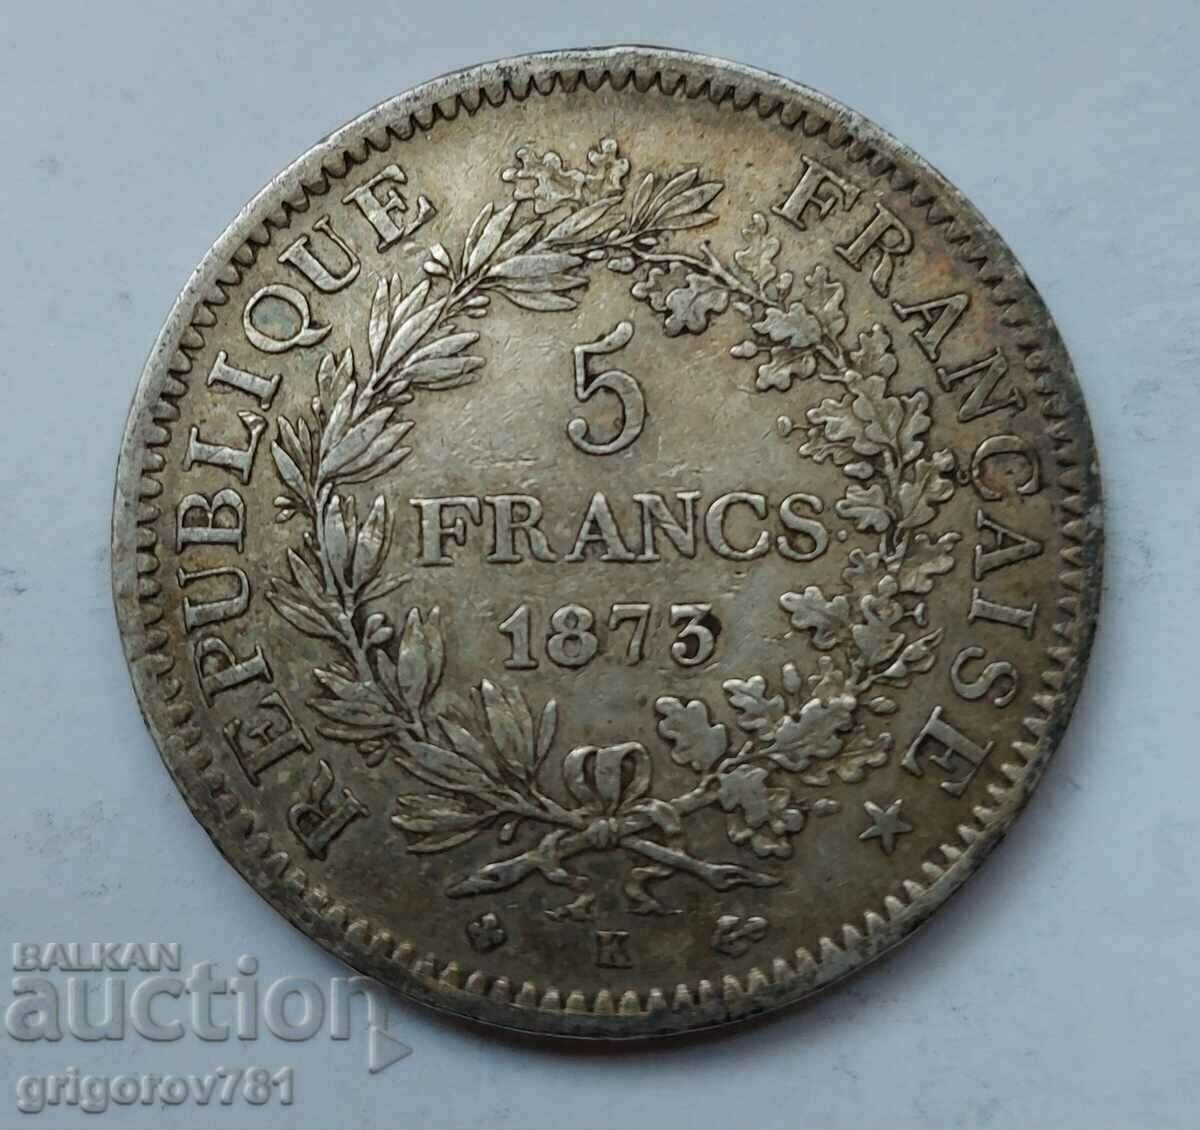 5 Φράγκα Ασήμι Γαλλία 1873 K - Ασημένιο νόμισμα #210